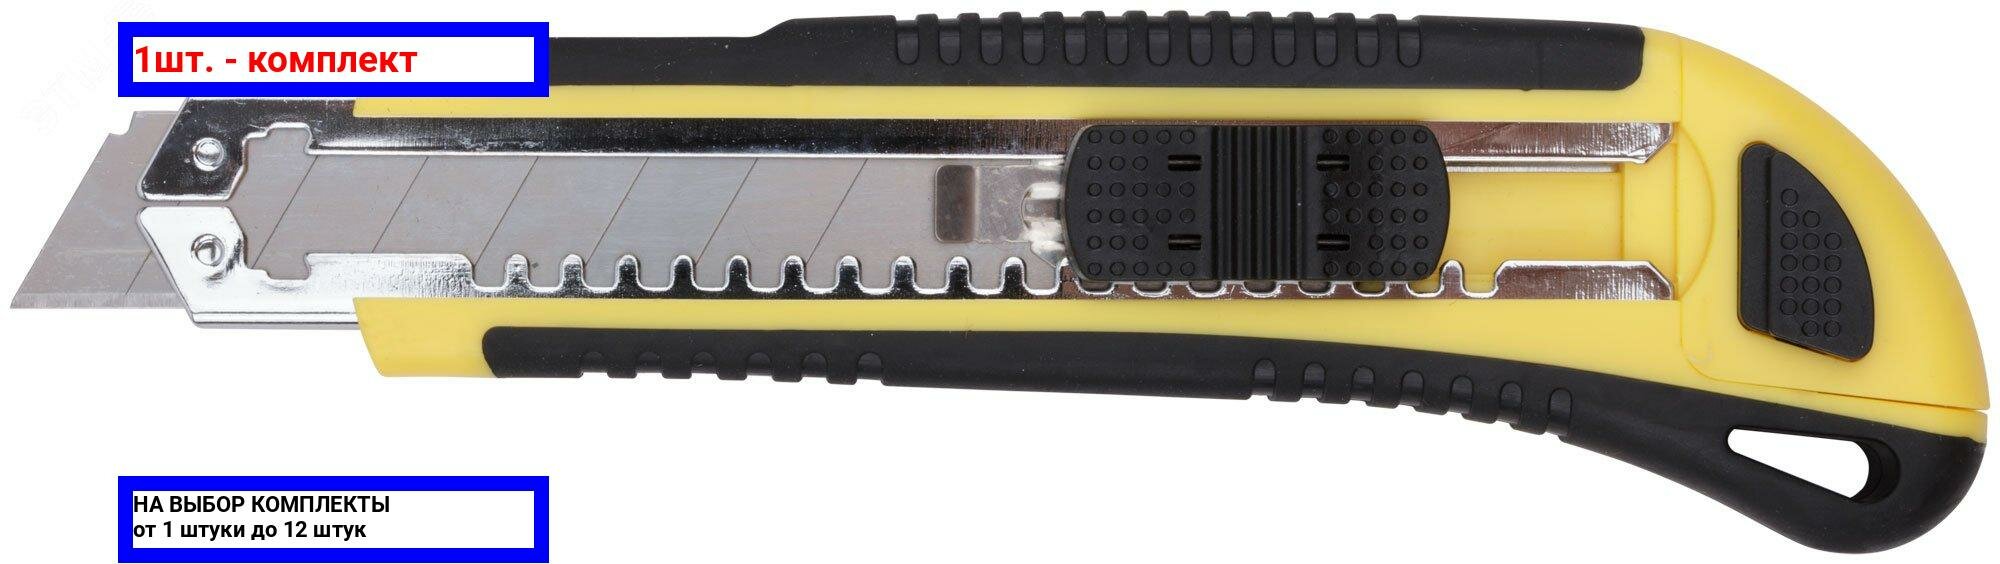 1шт. - Нож технический 18 мм усиленный прорезиненный, кассета 3 лезвия, Профи / FIT; арт. 10263; оригинал / - комплект 1шт